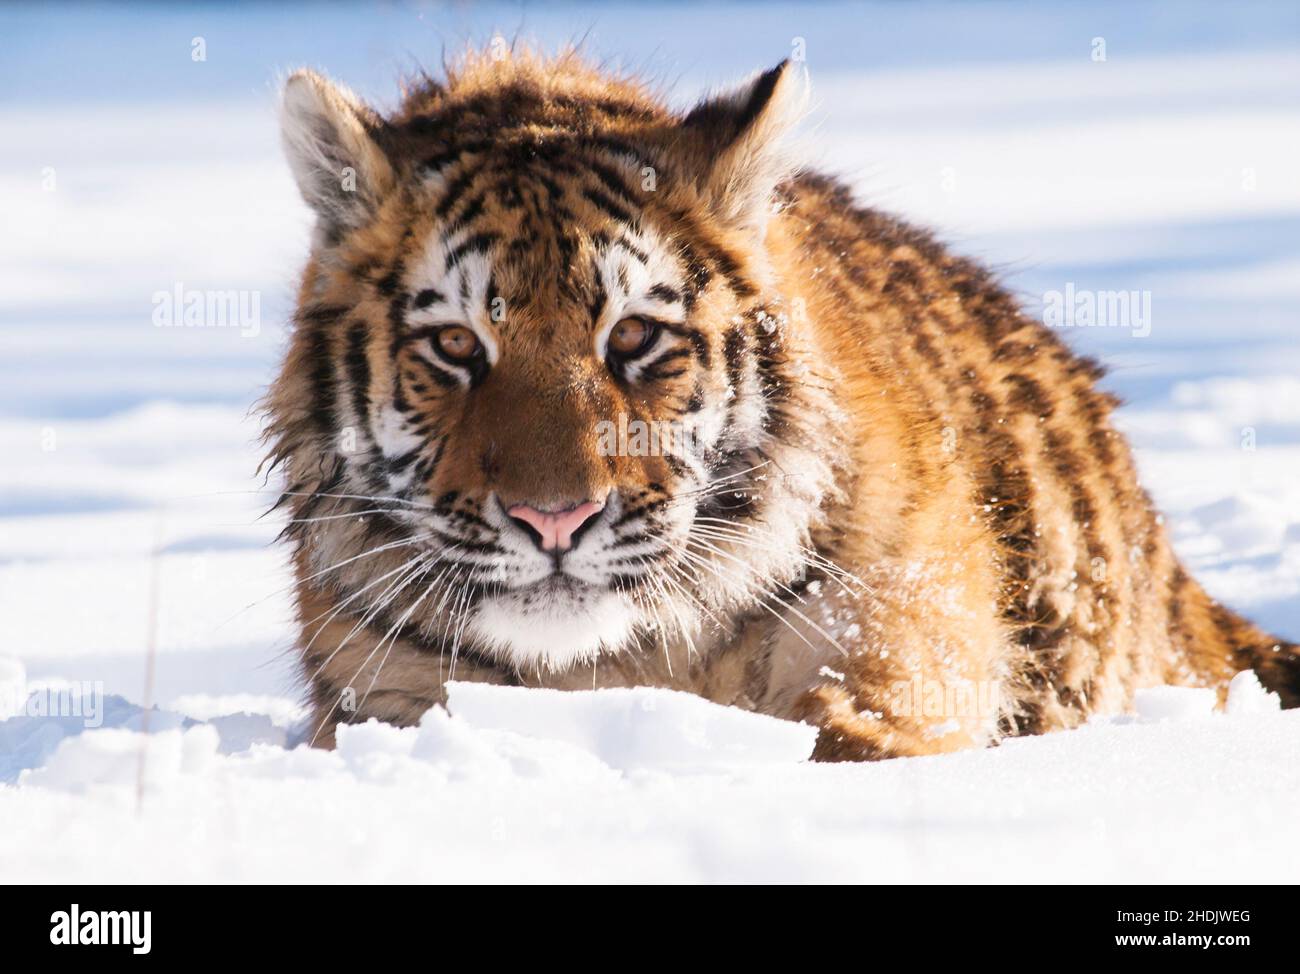 Tigre siberiano, Panthera tigris altaica. Escena de vida silvestre con animales peligrosos. Invierno frío en taiga, Rusia. Tigre en la naturaleza salvaje del invierno, acostado en el sno Foto de stock